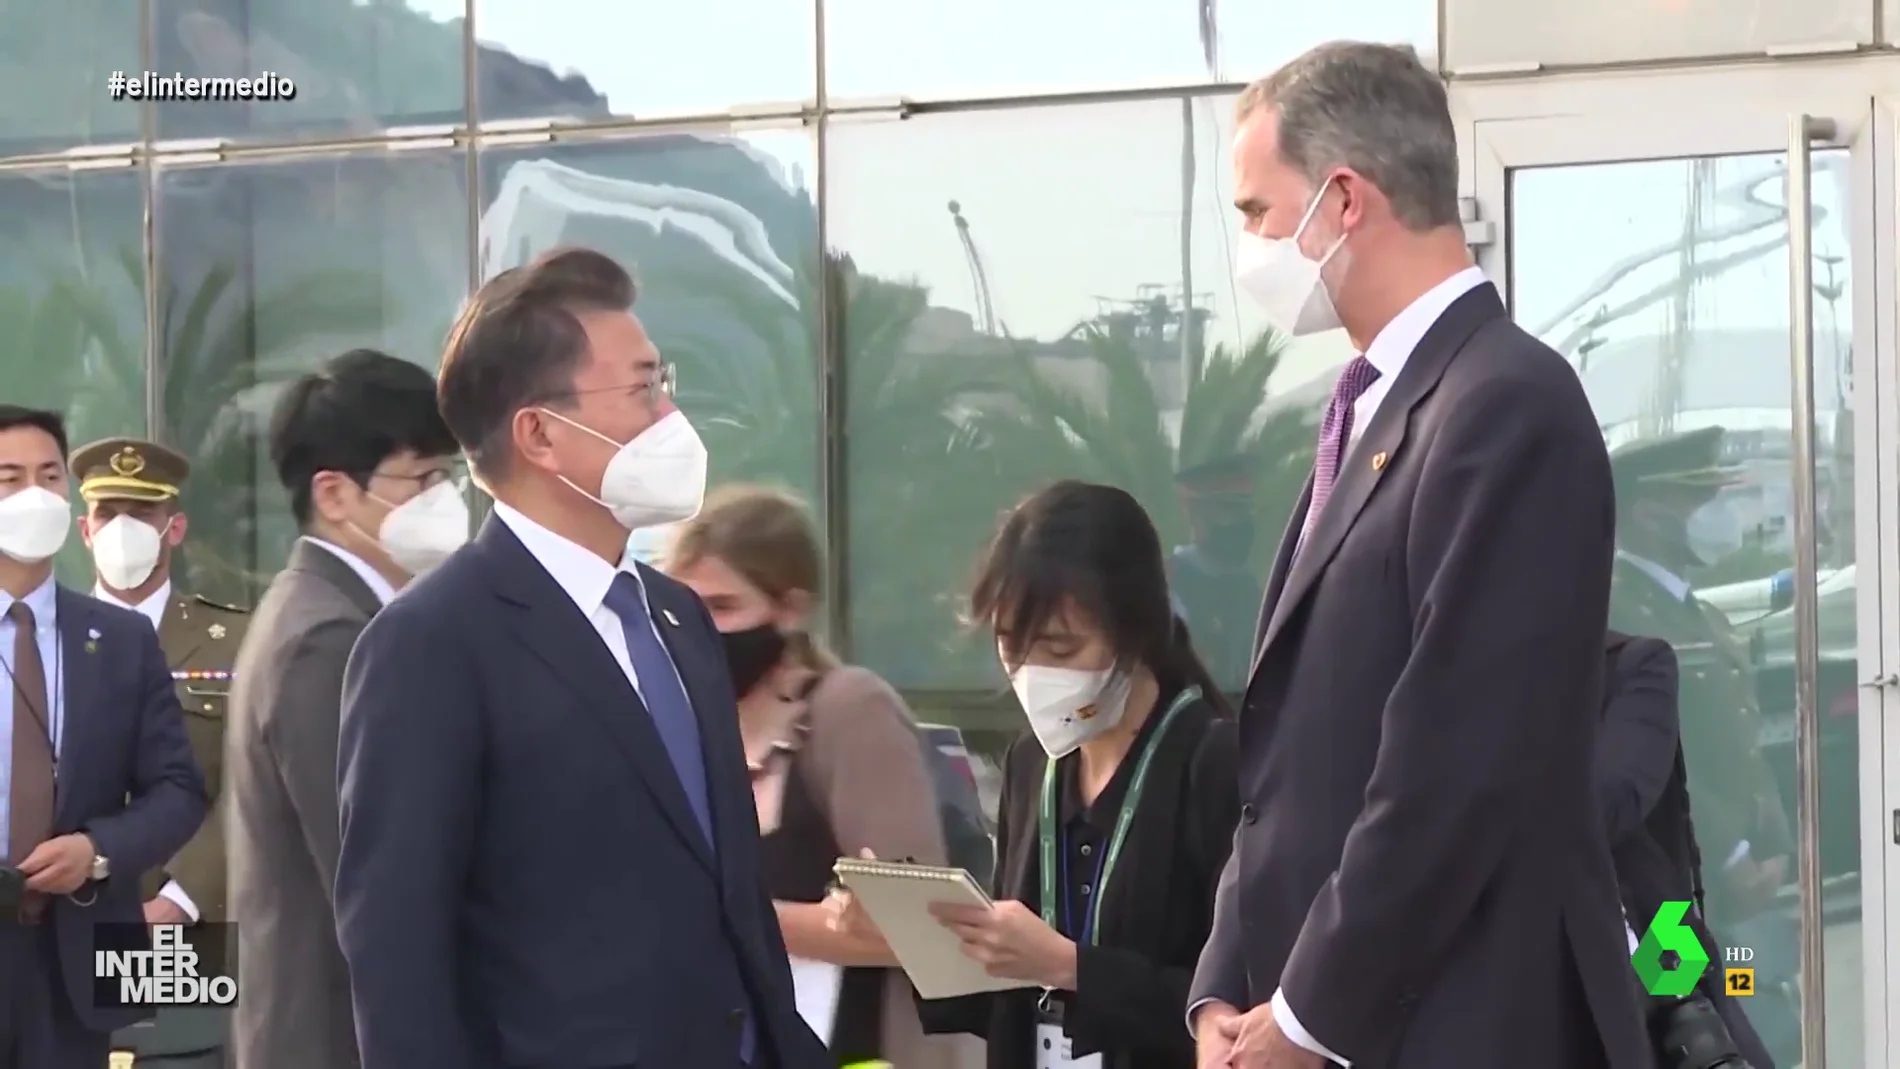 Vídeo manipulado - "Llevo dos meses en casa de mi suegra": la 'verdadera' conversación entre el rey y el presidente de Corea